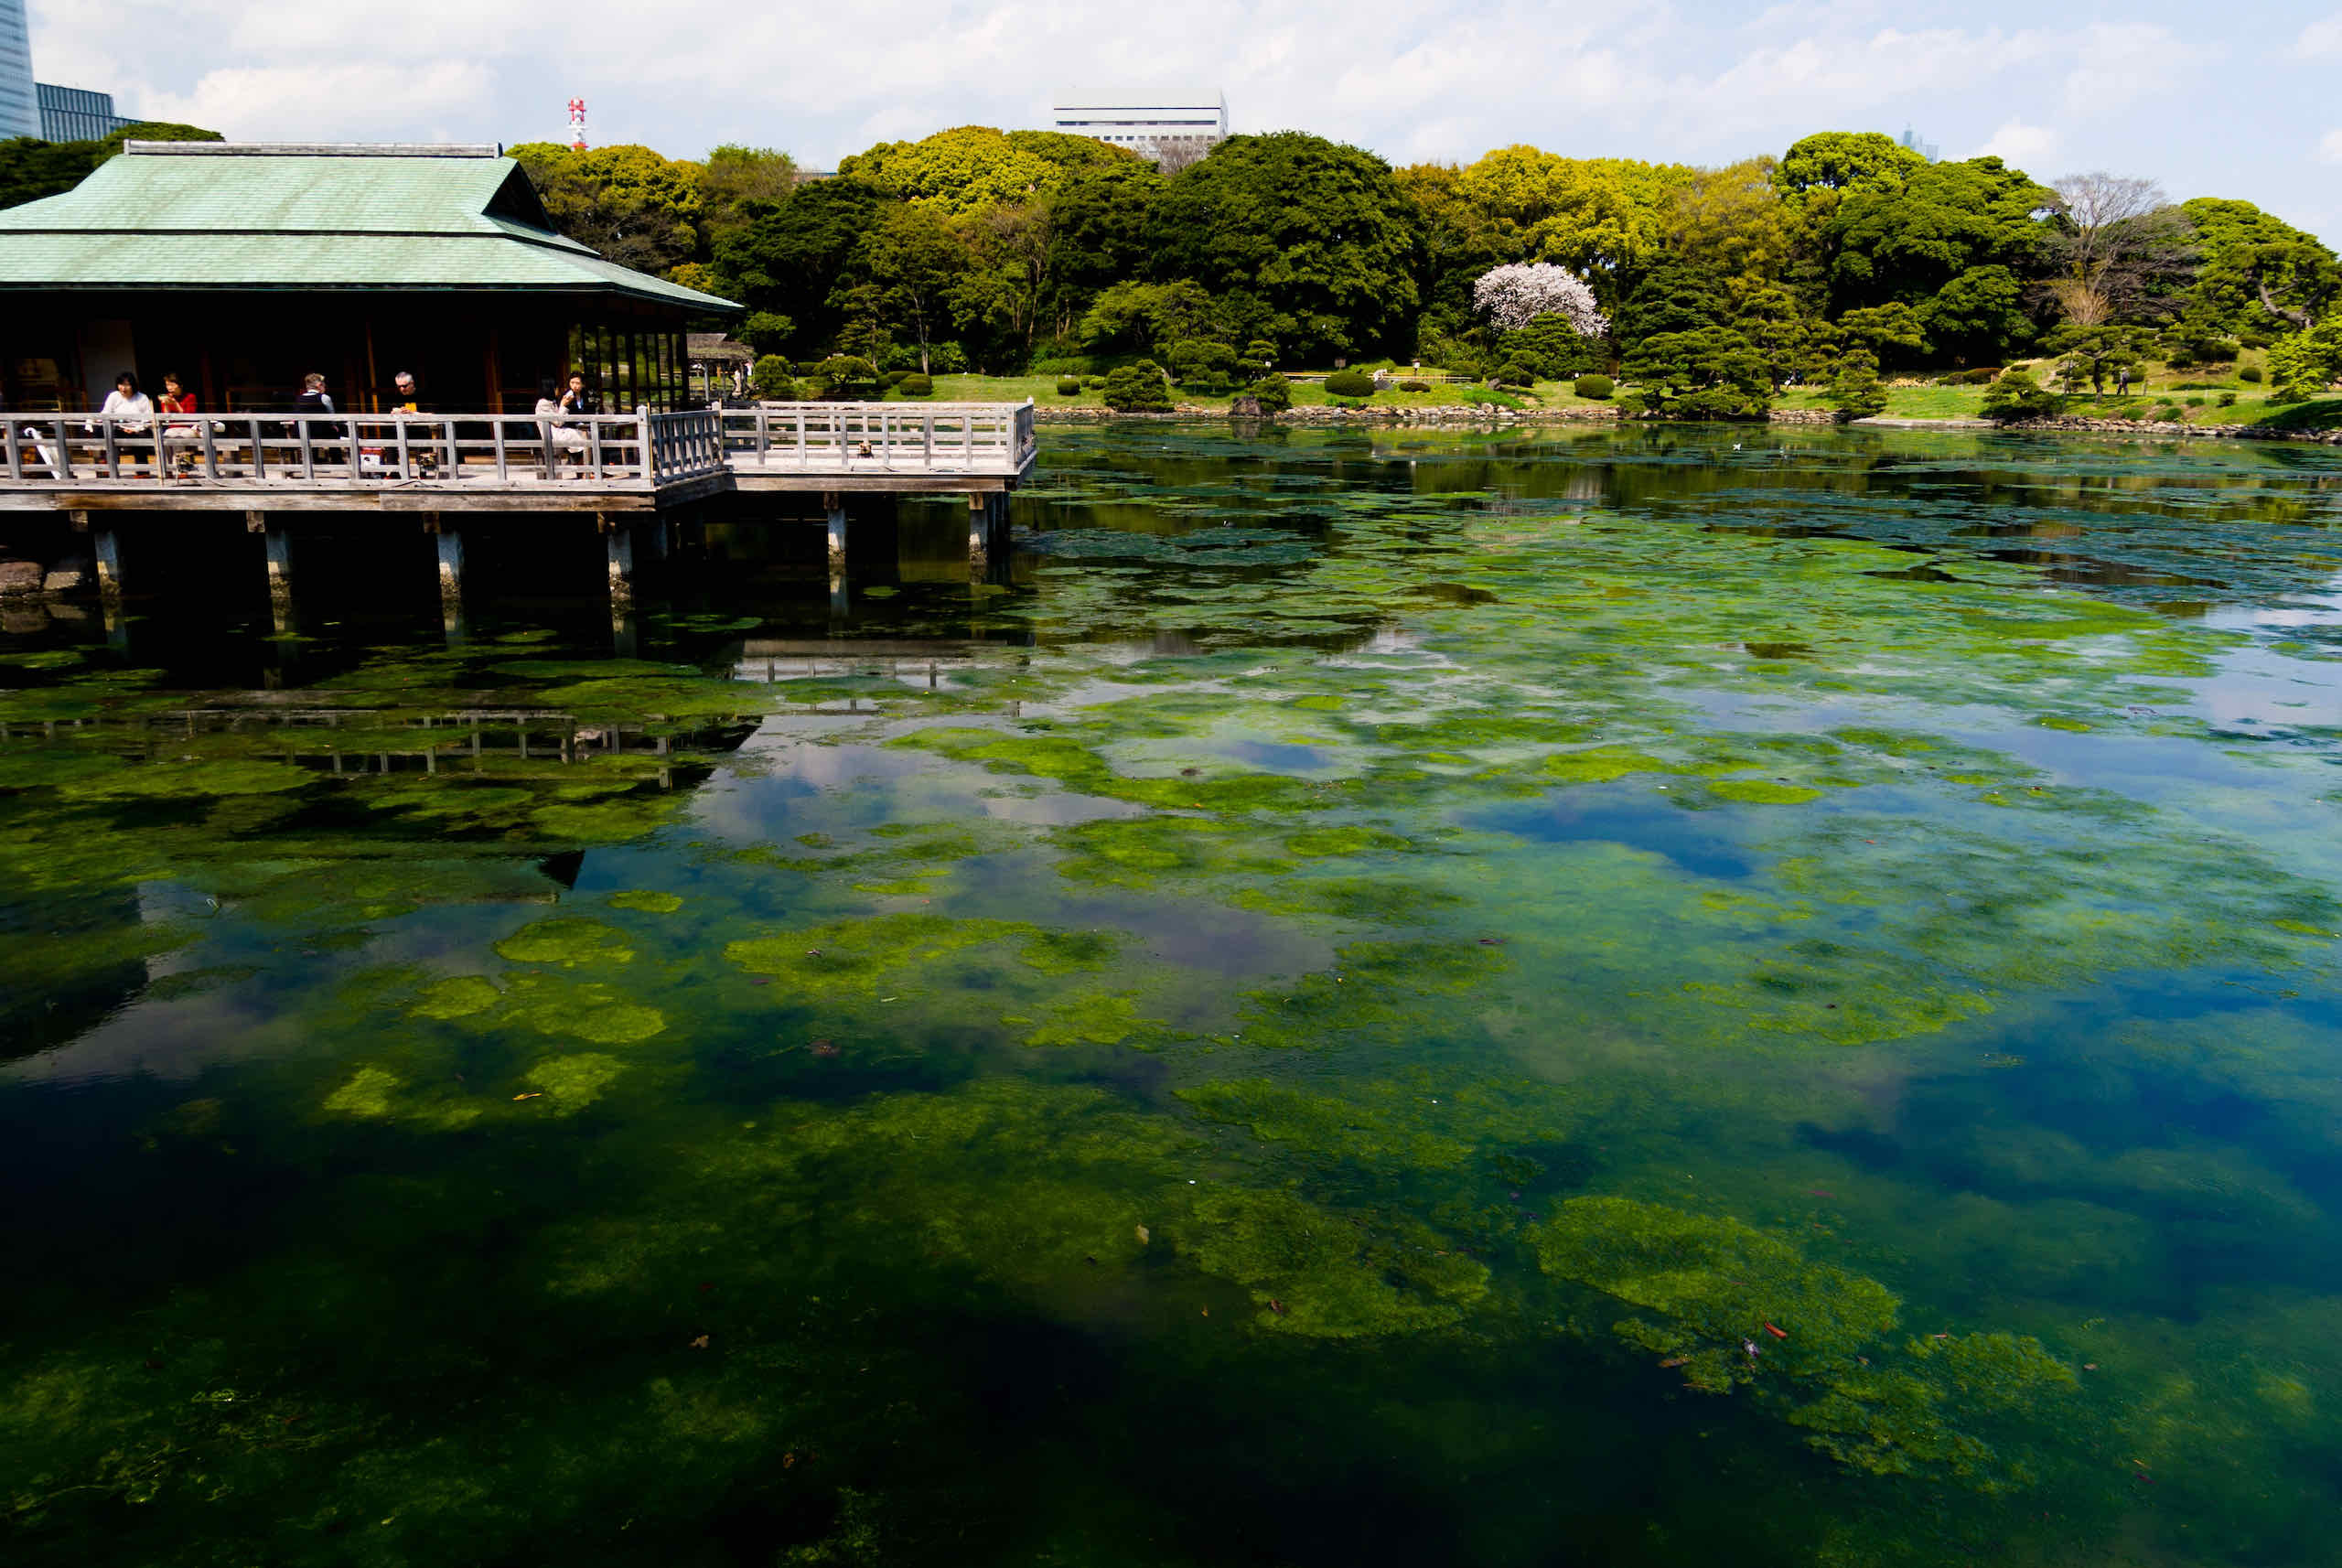 shiori no ike (tidal pond) (潮入の池)